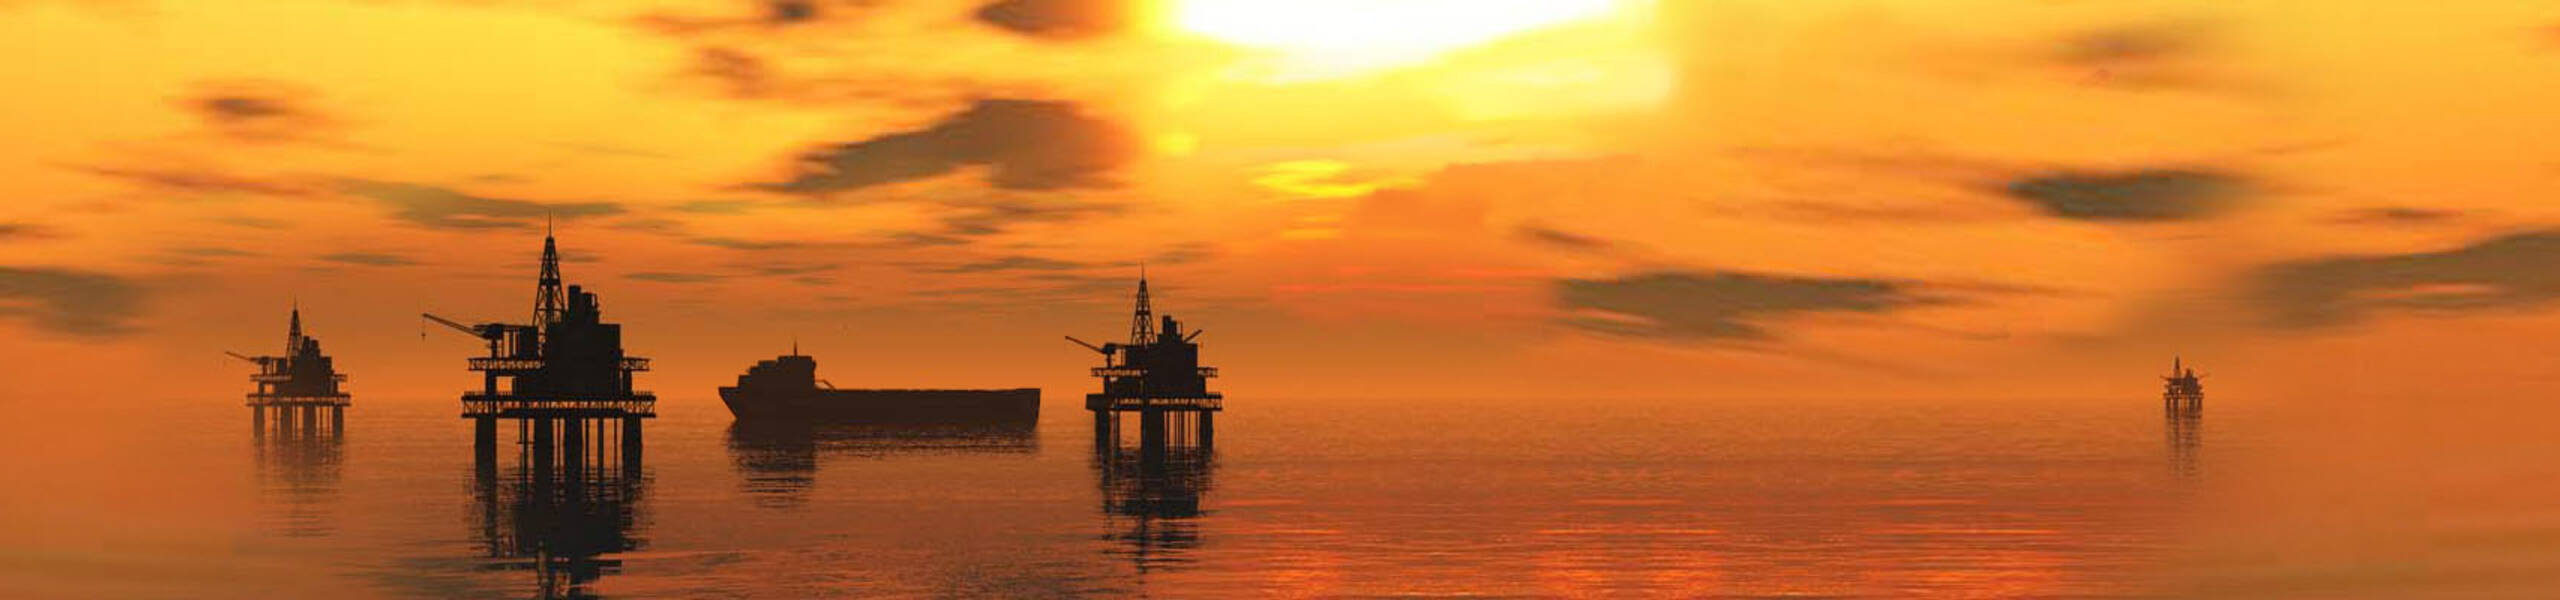 Preços do petróleo caem 1% com o aumento da preocupação com a oferta